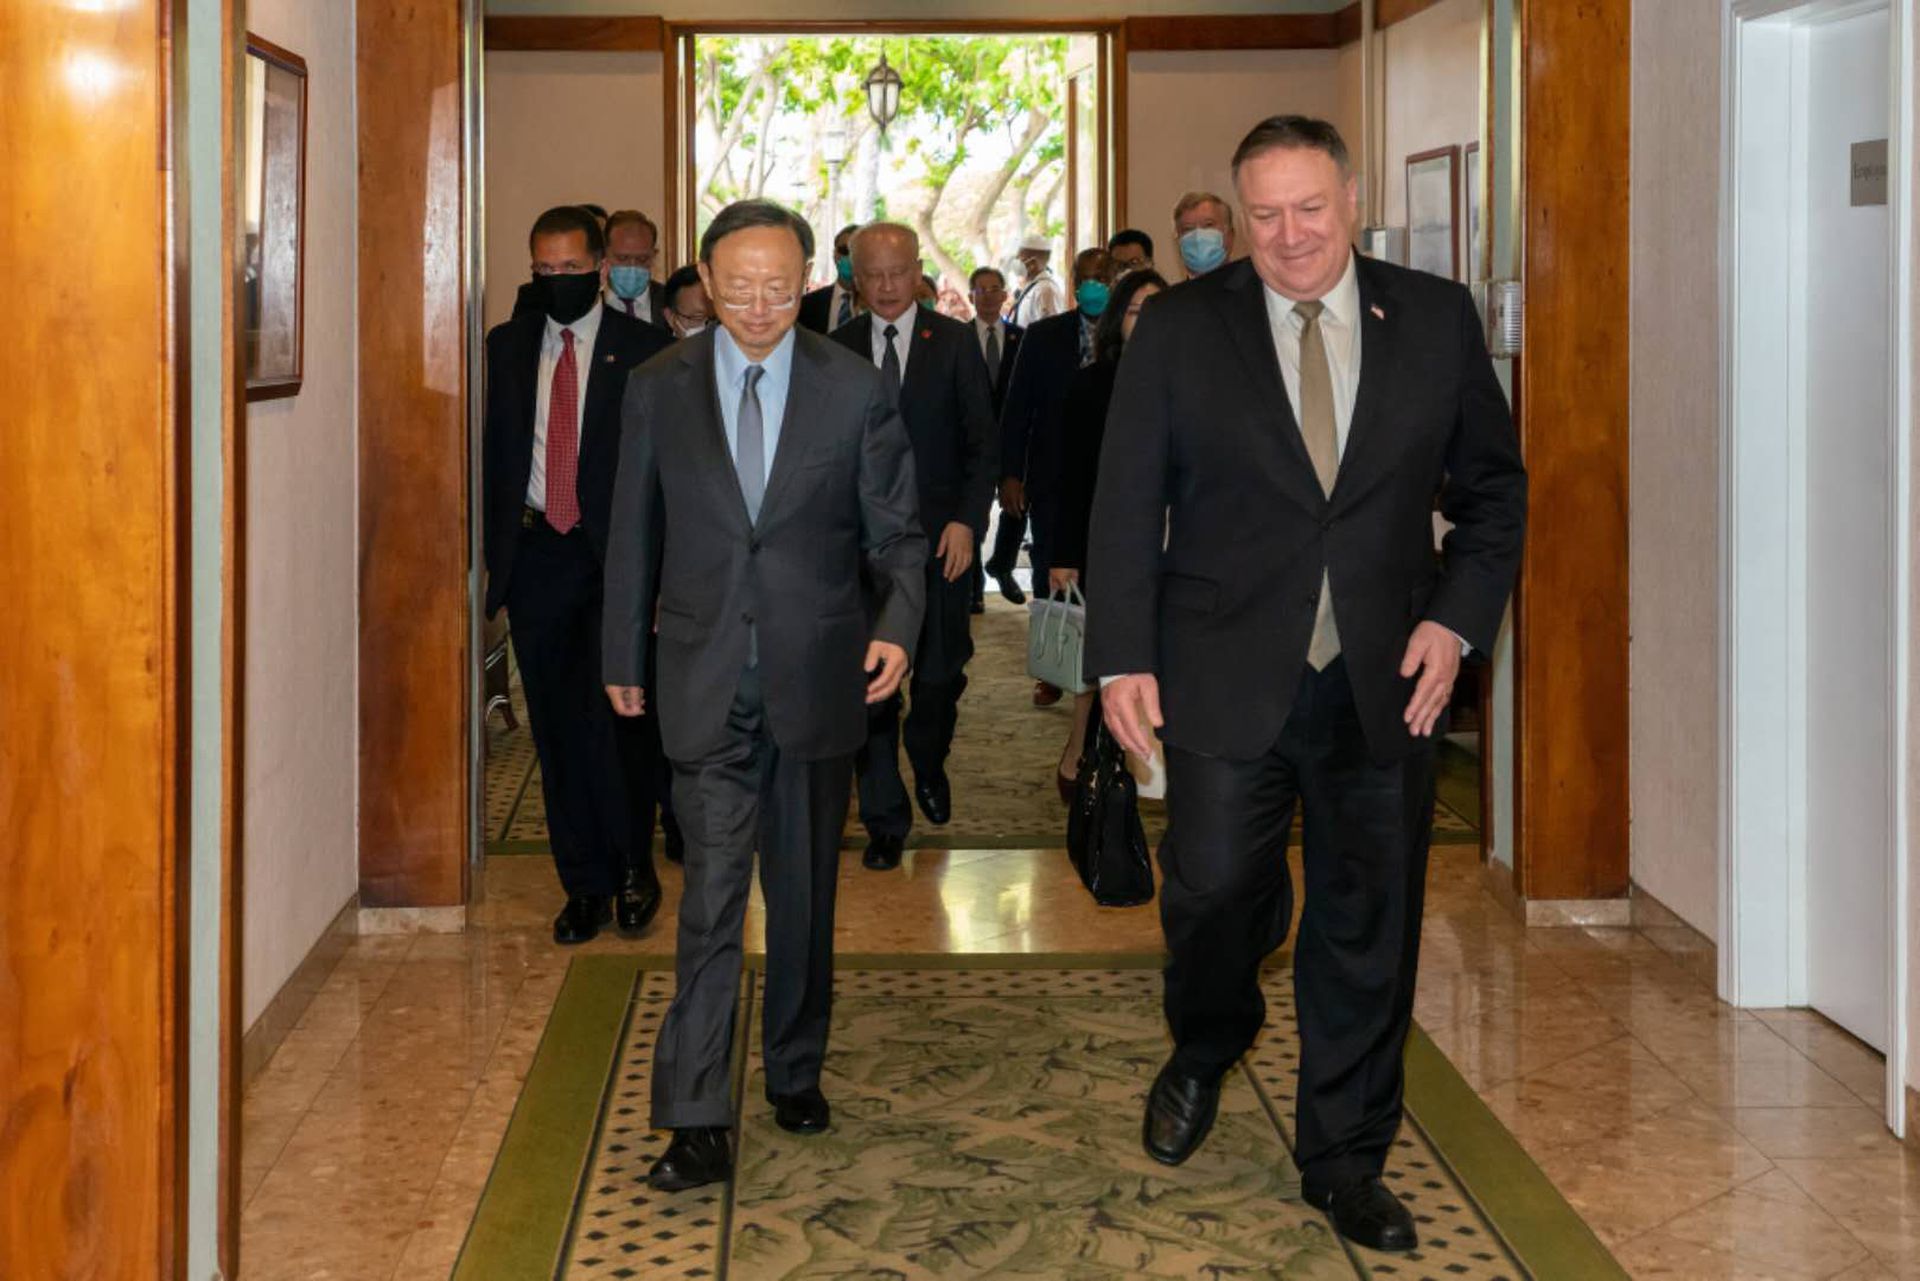 2020年6月17日，美国国务卿蓬佩奥在推特公布了同中国高官杨洁篪的会晤照片。7月13日，蓬佩奥声明中提到杨洁篪有关南海“大国和小国”的表述。（Twitter@SecPompeo）